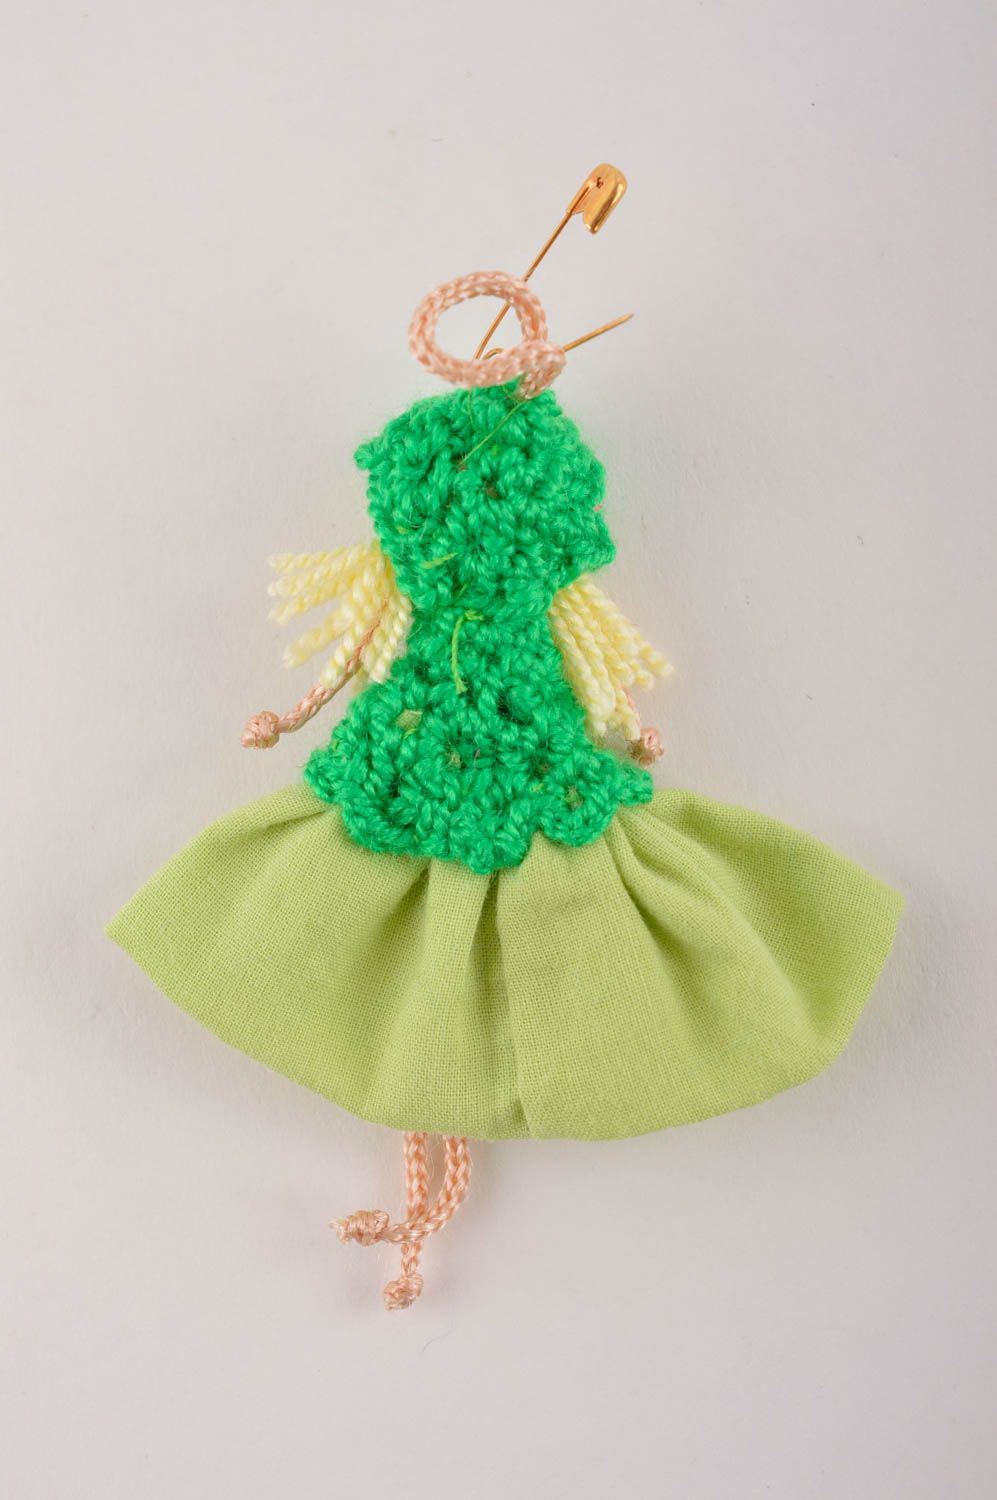 Брошь ручной работы текстильная брошь кукла авторское украшение из хлопка фото 3